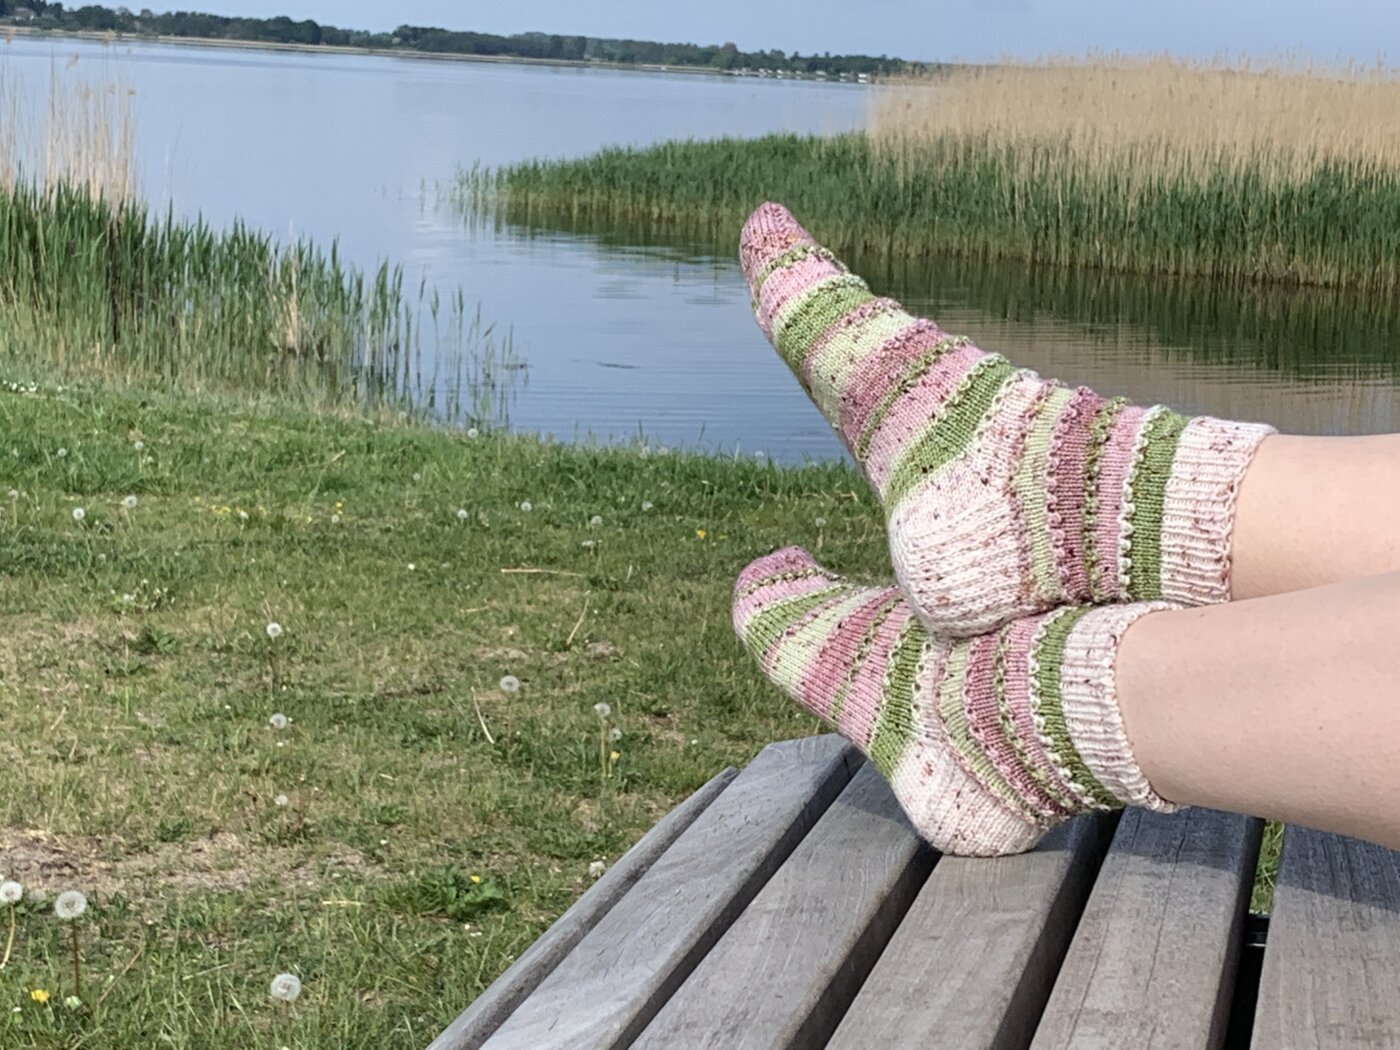 TildaSocks - Socken mit Dekorstreifen - in fünf verschiedenen Farben - gemeinschaftlich Socken stricken